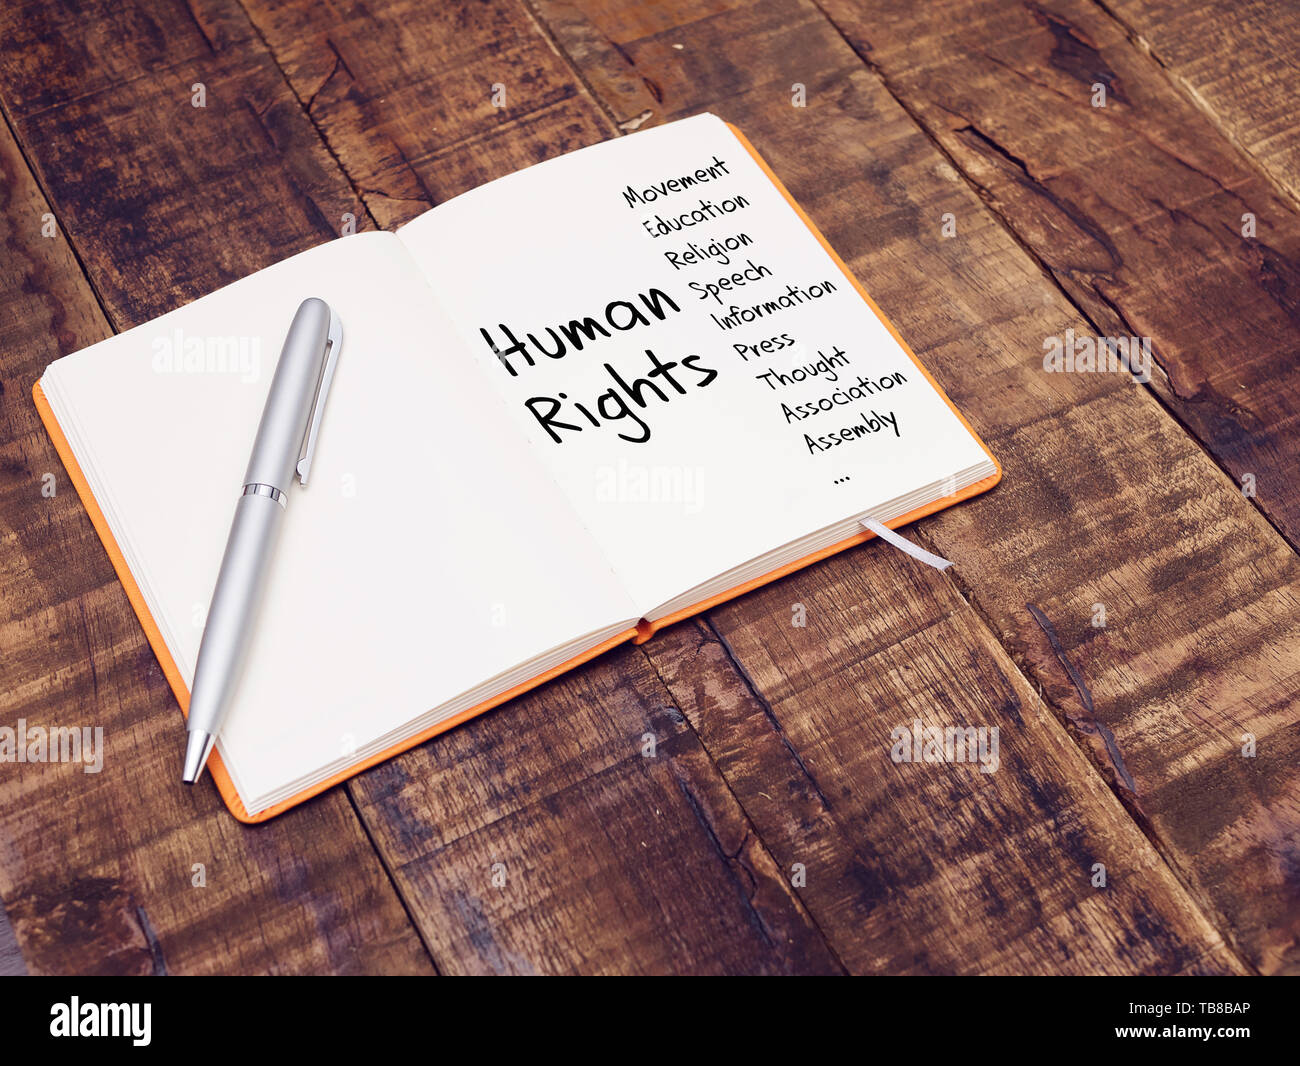 Diritti umani il concetto di diritti umani mappa mentale con la scrittura a mano sulla nota prenota al tavolo di legno Foto Stock